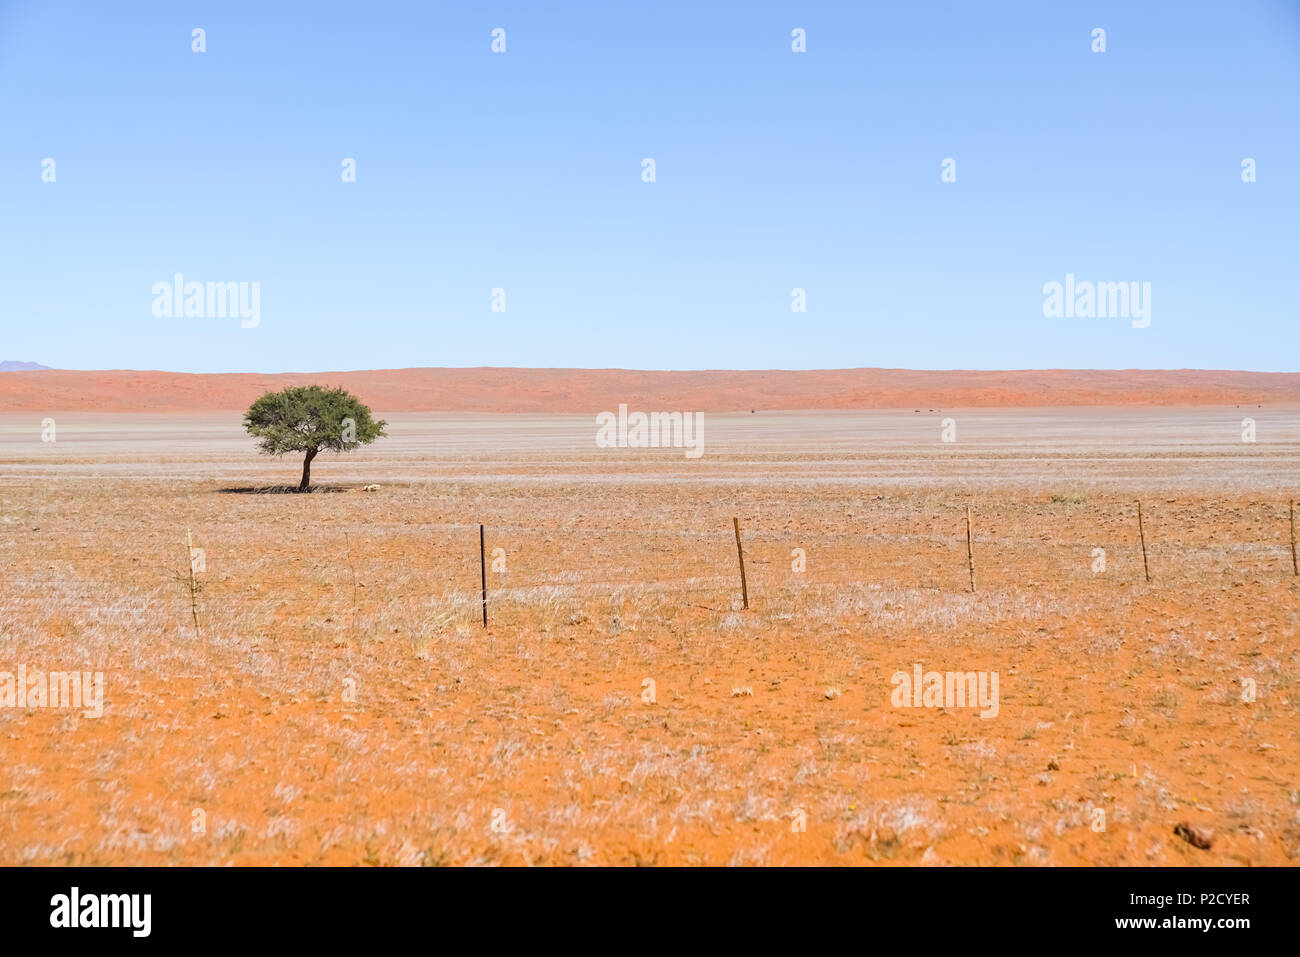 Breite in der Regel Süden Namibias Landschaft von tief Eisen reich orange Boden mit einem grünen Baum und kurze silbrig Gras unter blauen Himmel. Stockfoto